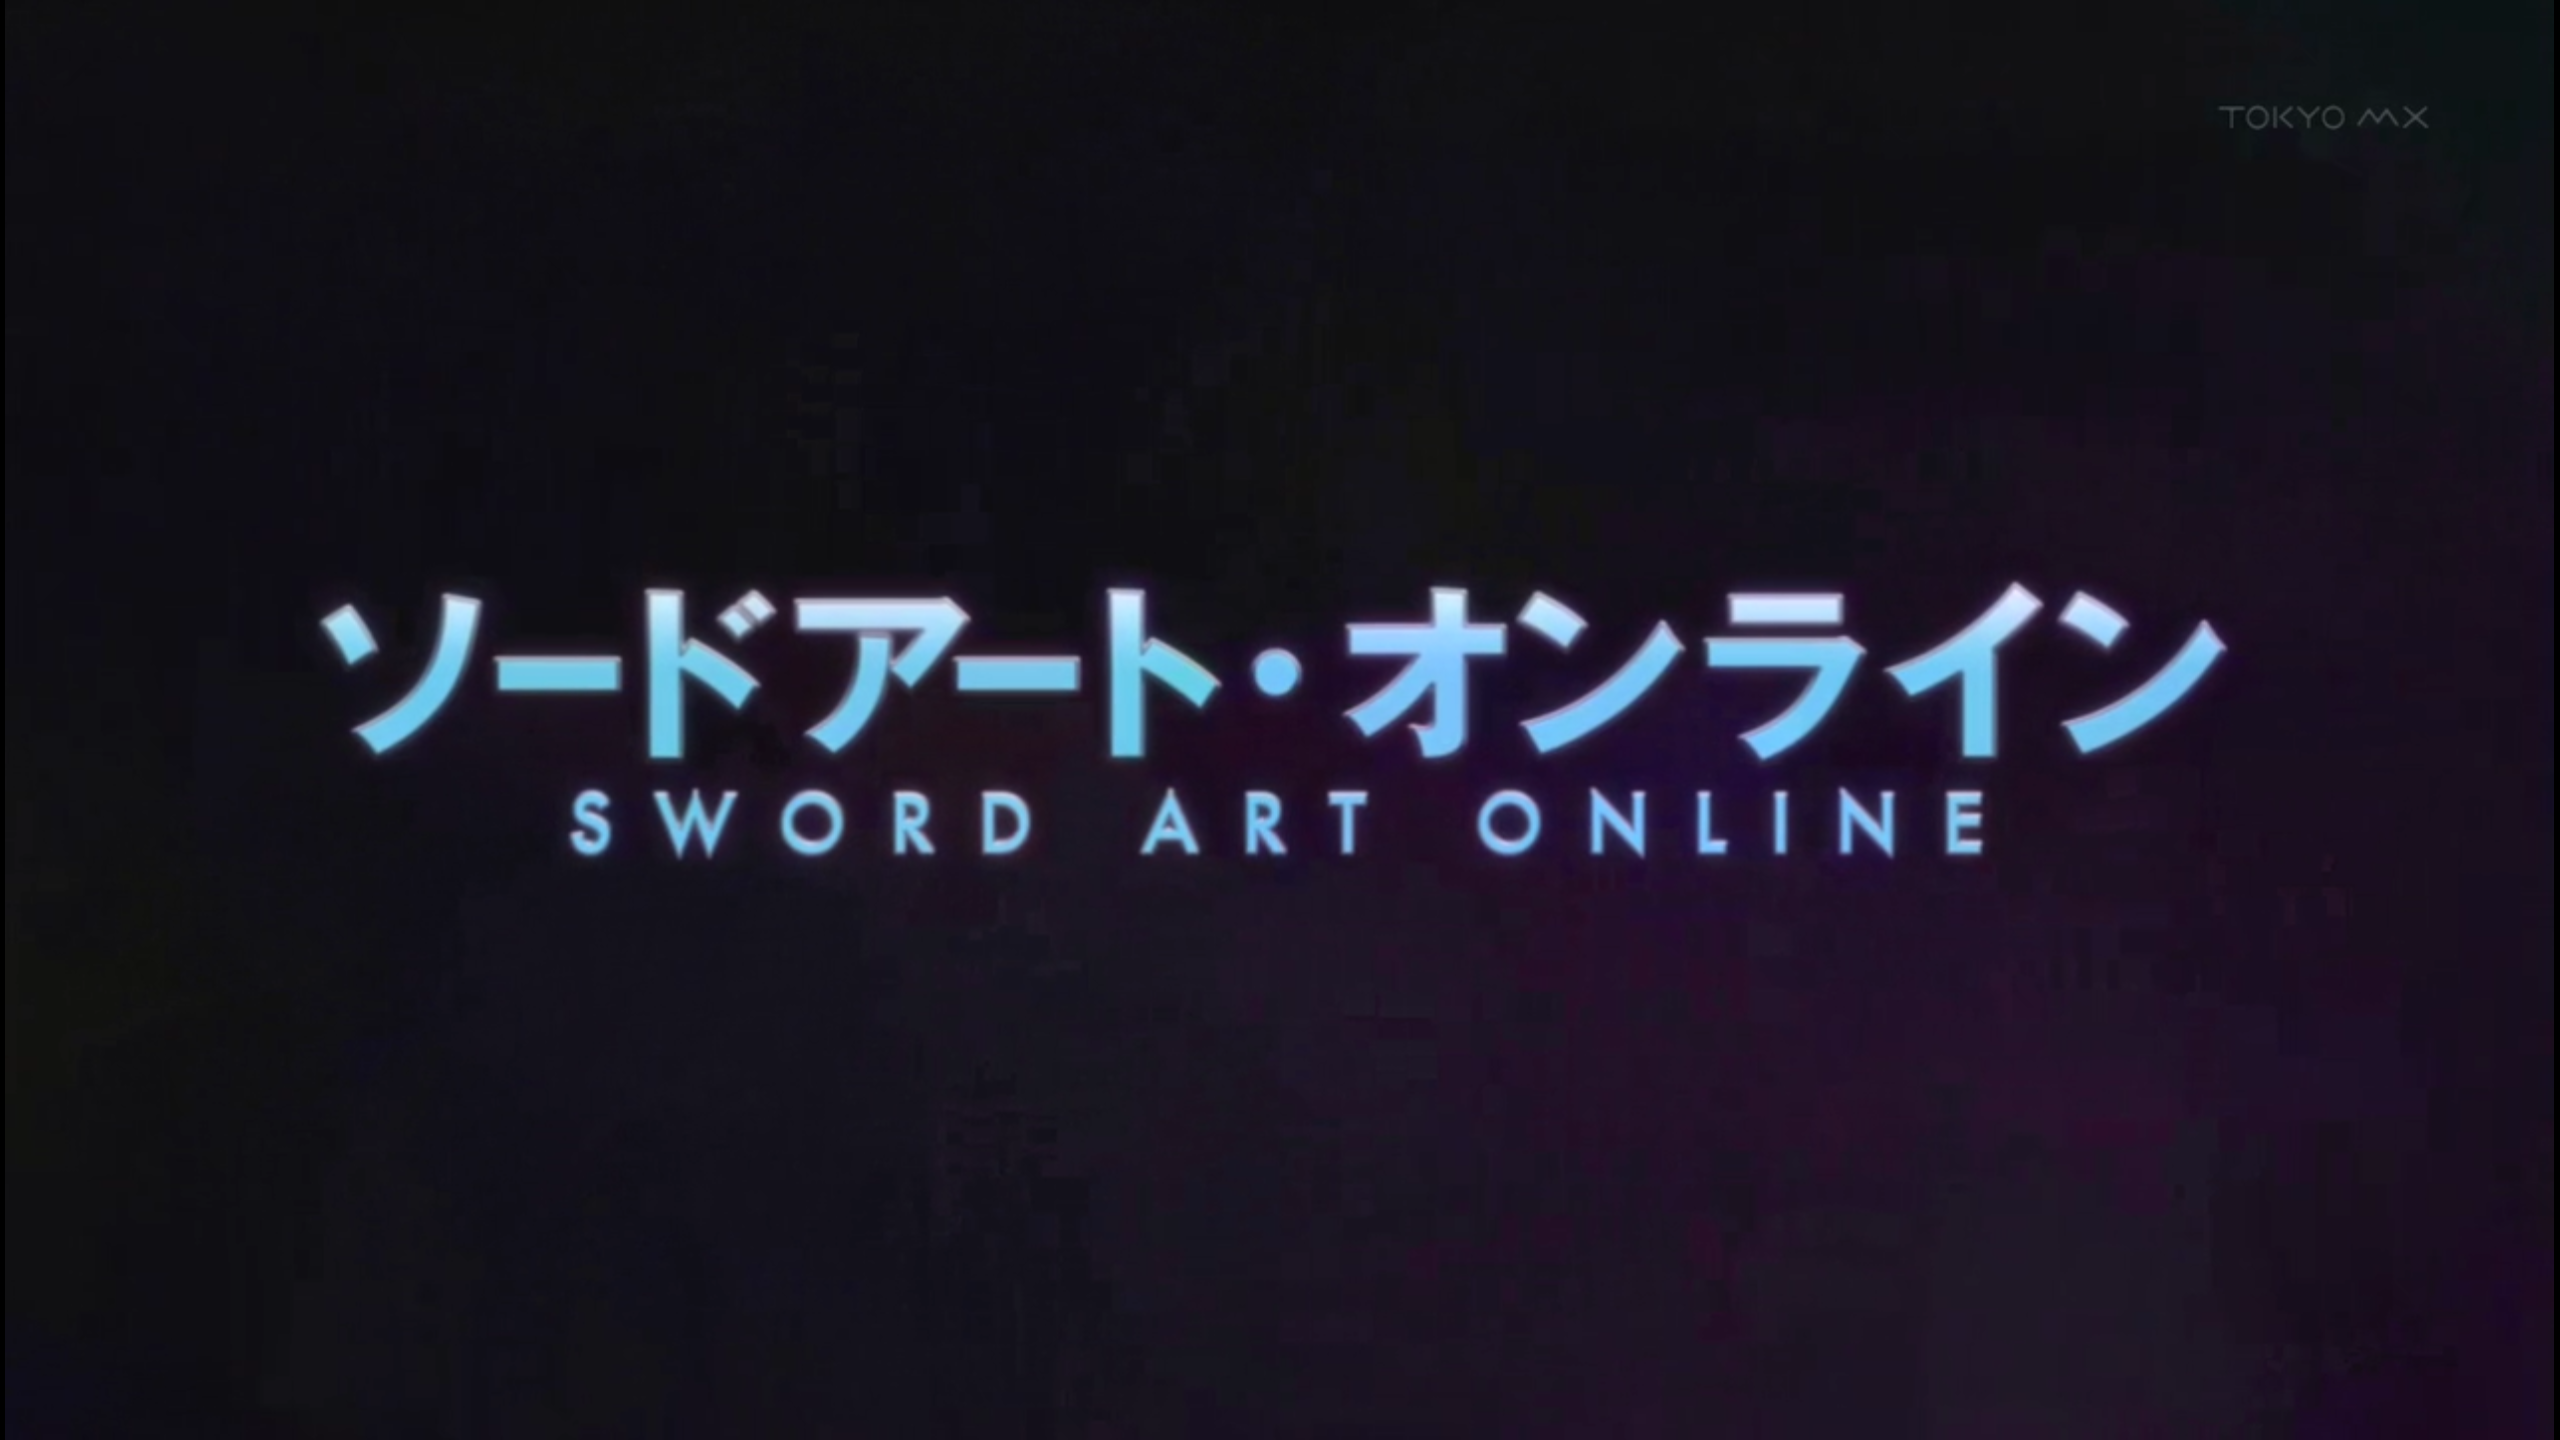 In a Nutshell » Sword art online title screen